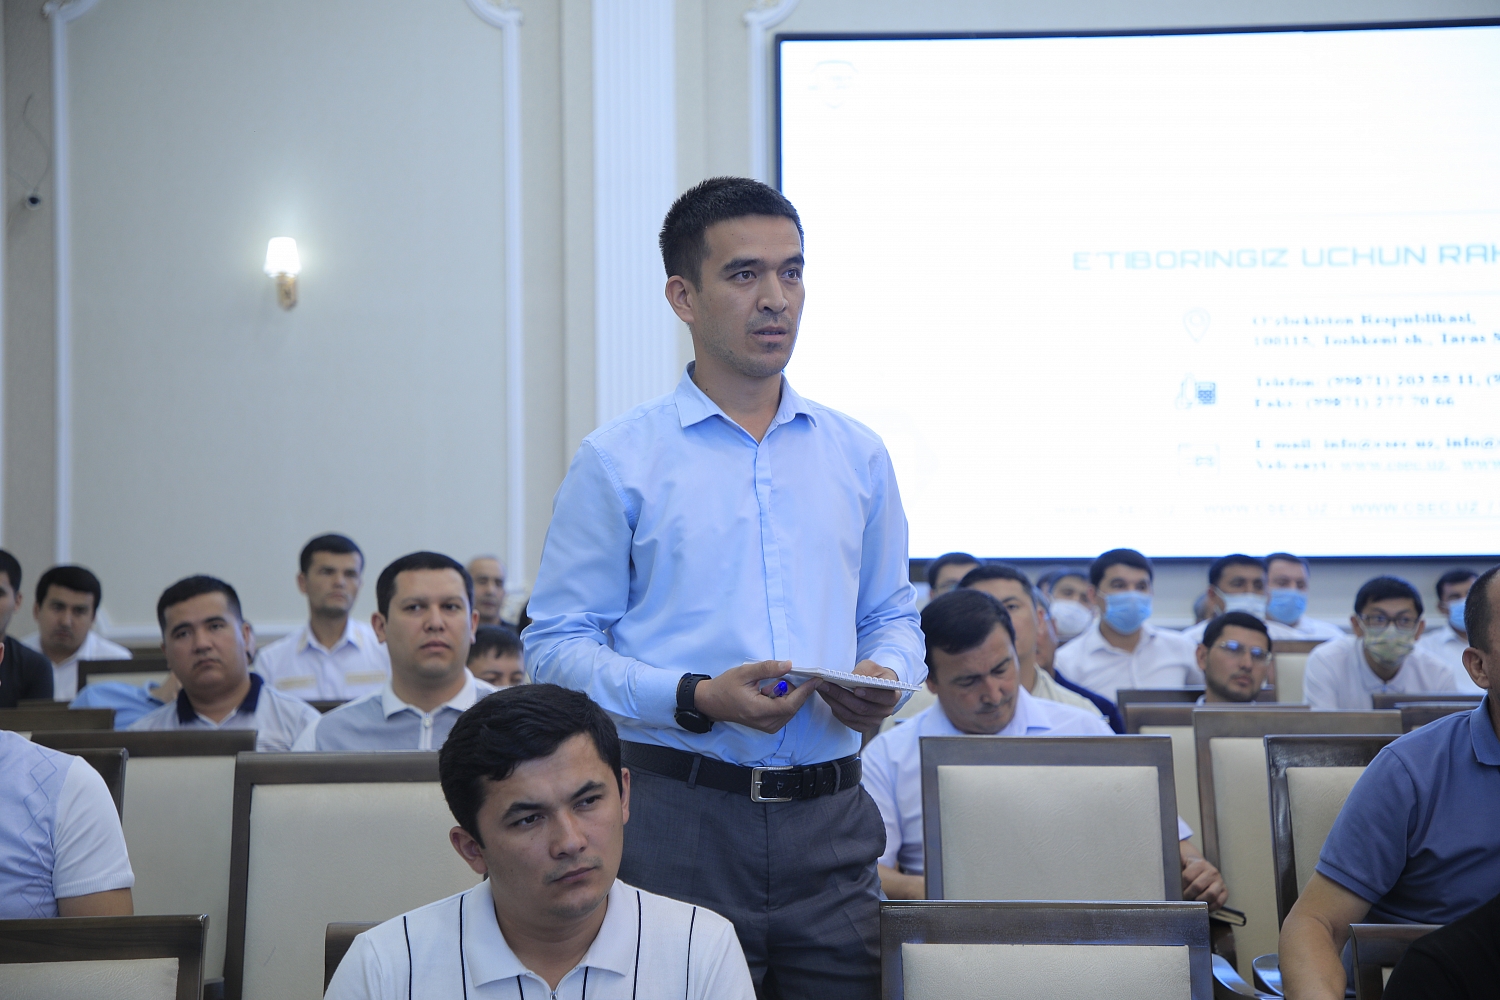 Сегодня совместно с государственной инспекцией «Узкомнозорат» в здании хокимията Андижанской области прошел семинар по содержанию Закона Республики Узбекистан «О кибербезопасности».